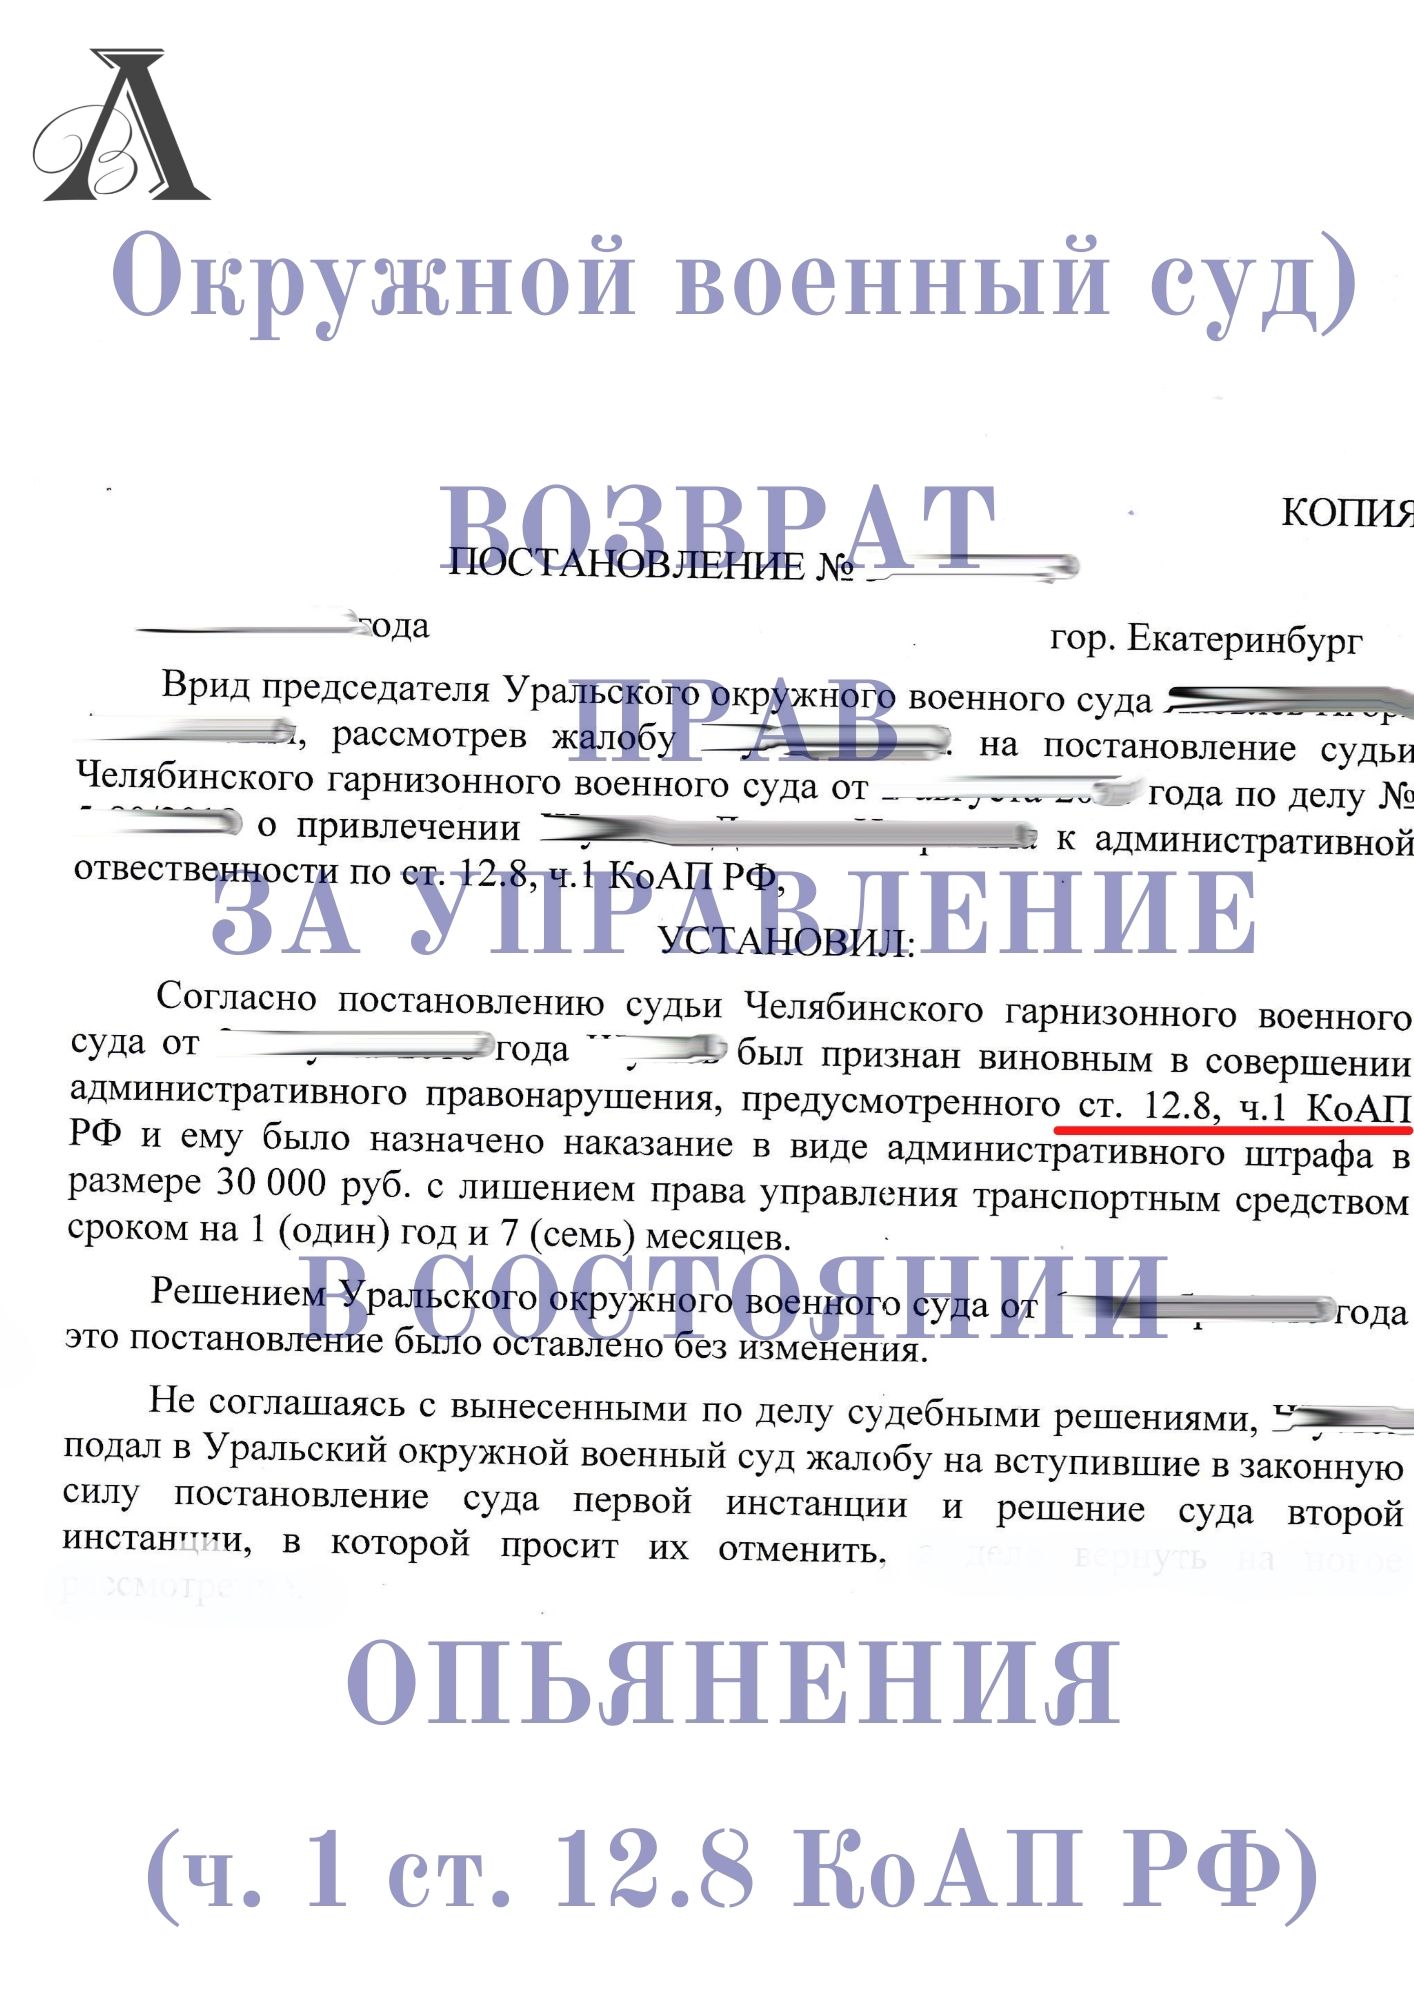 Вернули права в окружном военном суде по ст. 12.8 КоАП РФ